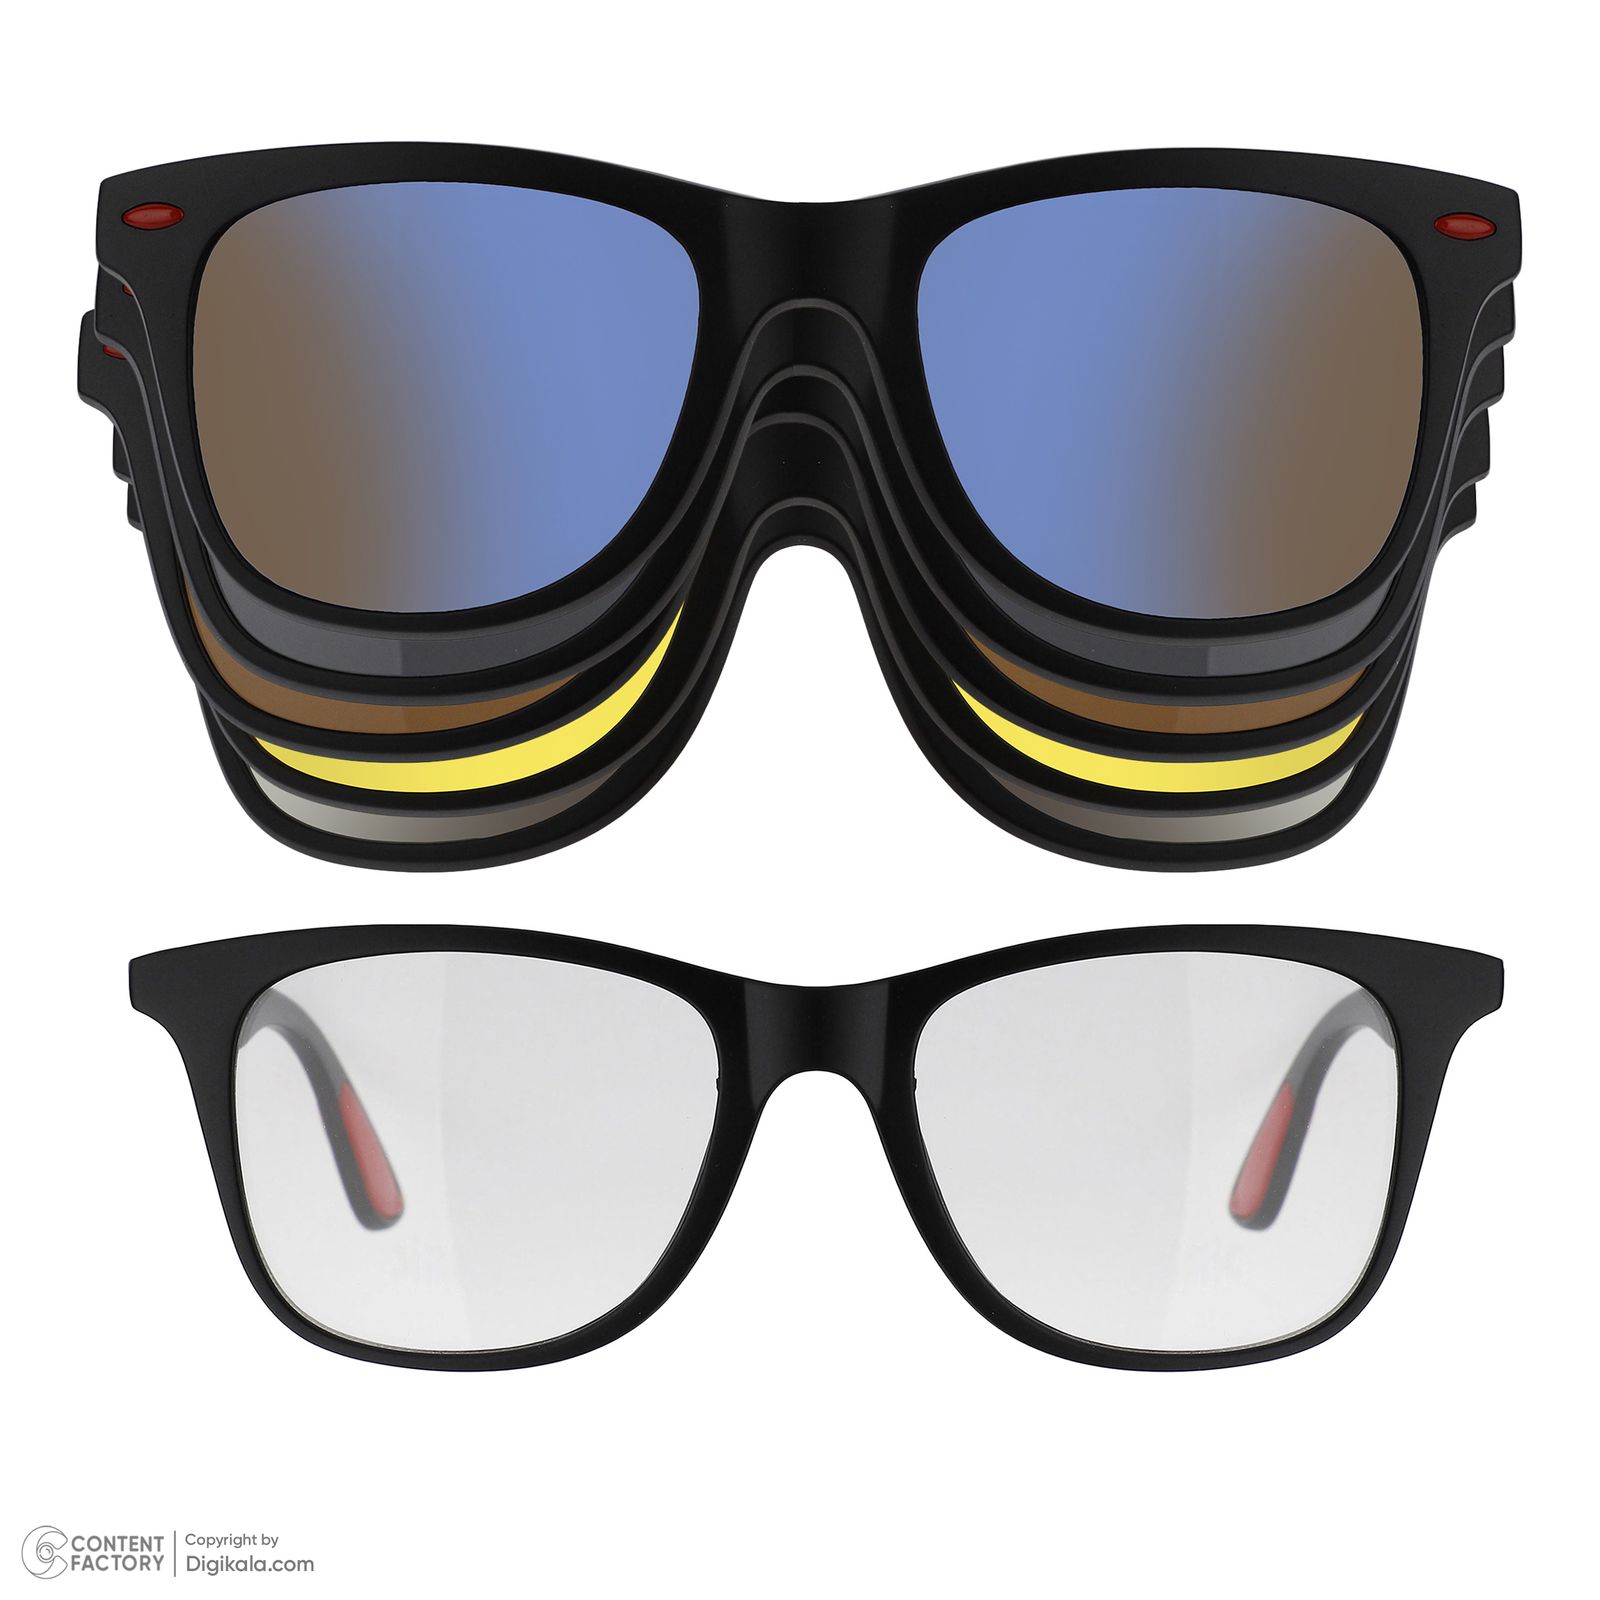 فریم عینک طبی به همراه کاور آفتابی دونیک مدل tr2317-c2 مجموعه 6 عددی -  - 2